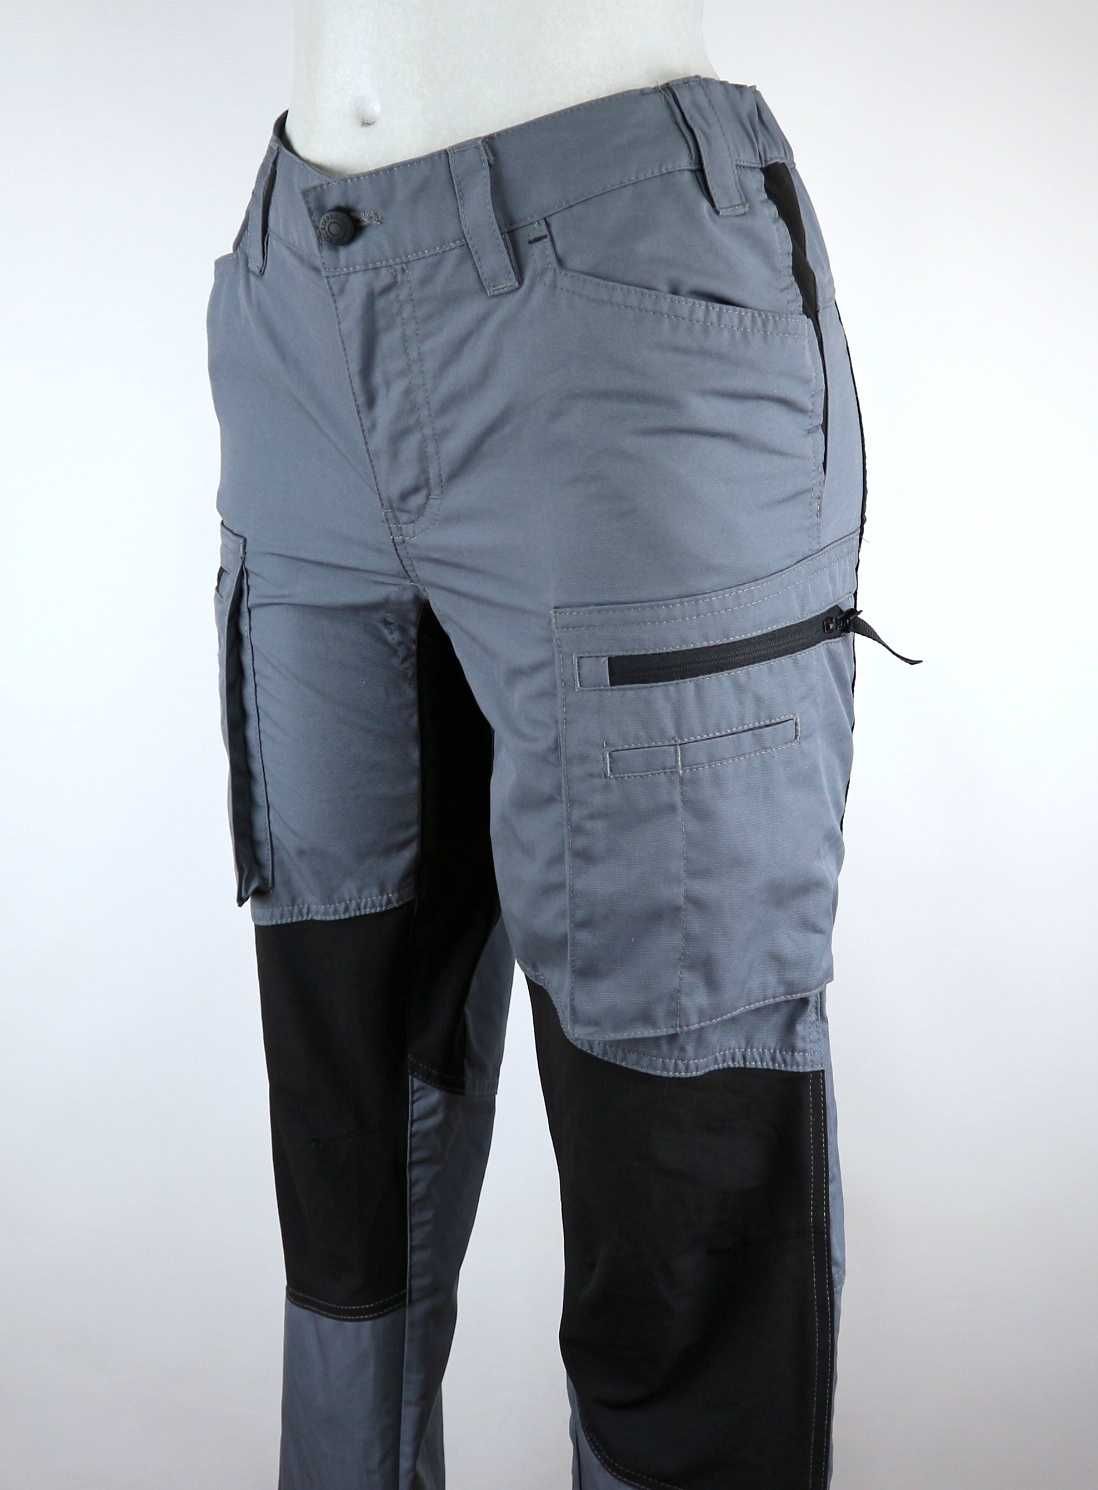 Blaklader lekkie damskie spodnie robocze ze stretchem 36 (S)